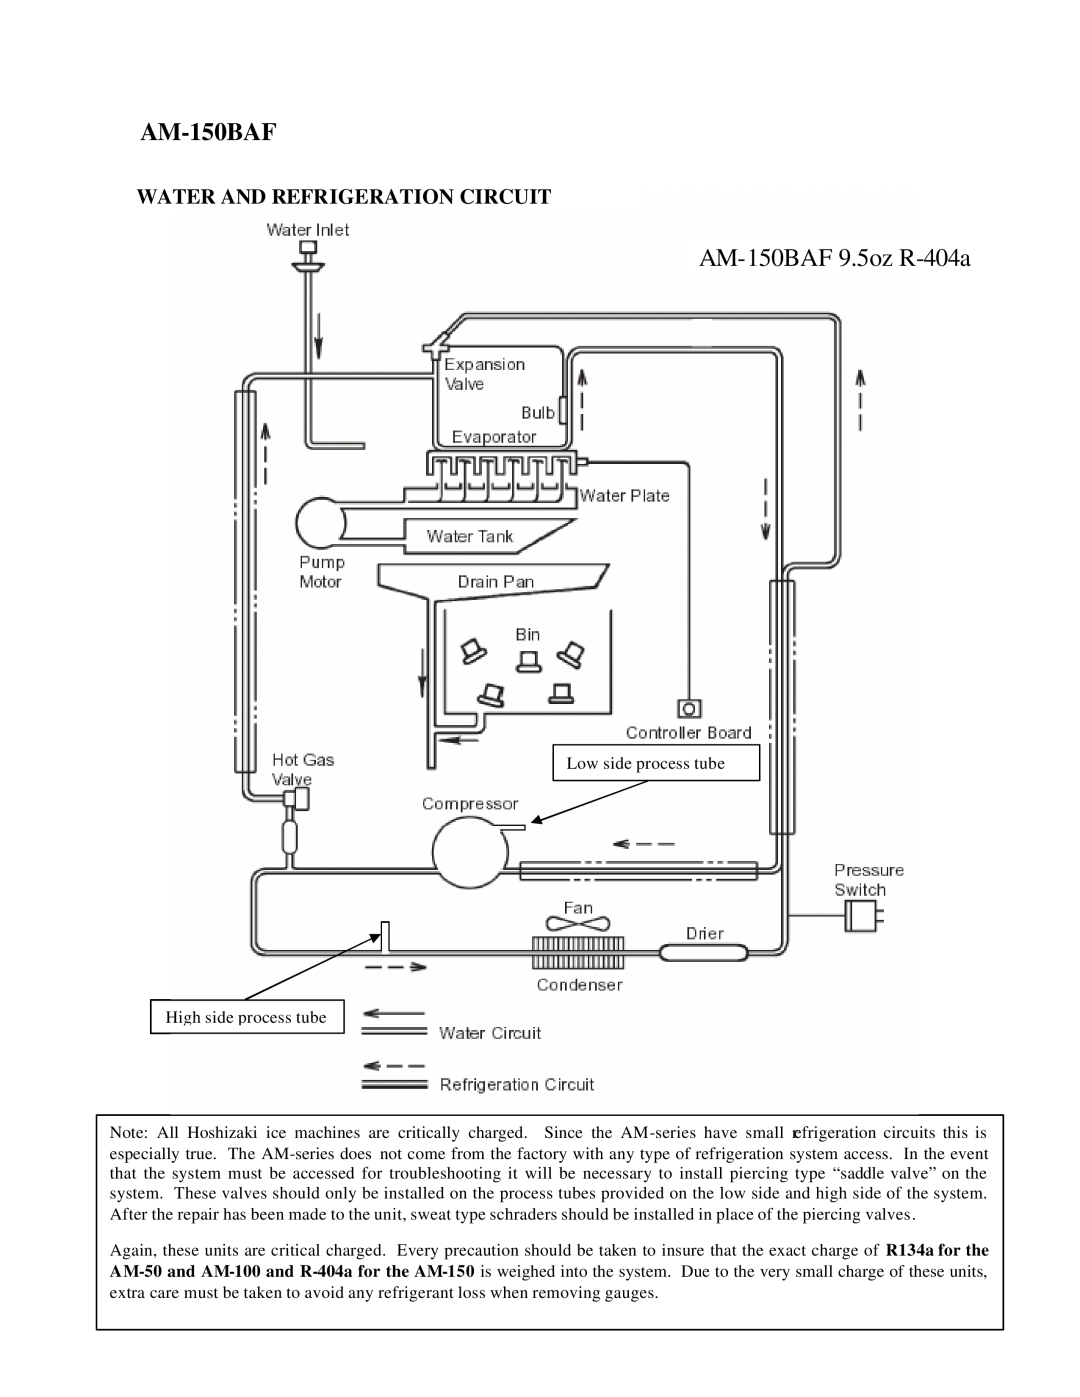 Hoshizaki AM-50BAE manual AM-150BAF9.5oz R-404a, Water And Refrigeration Circuit 